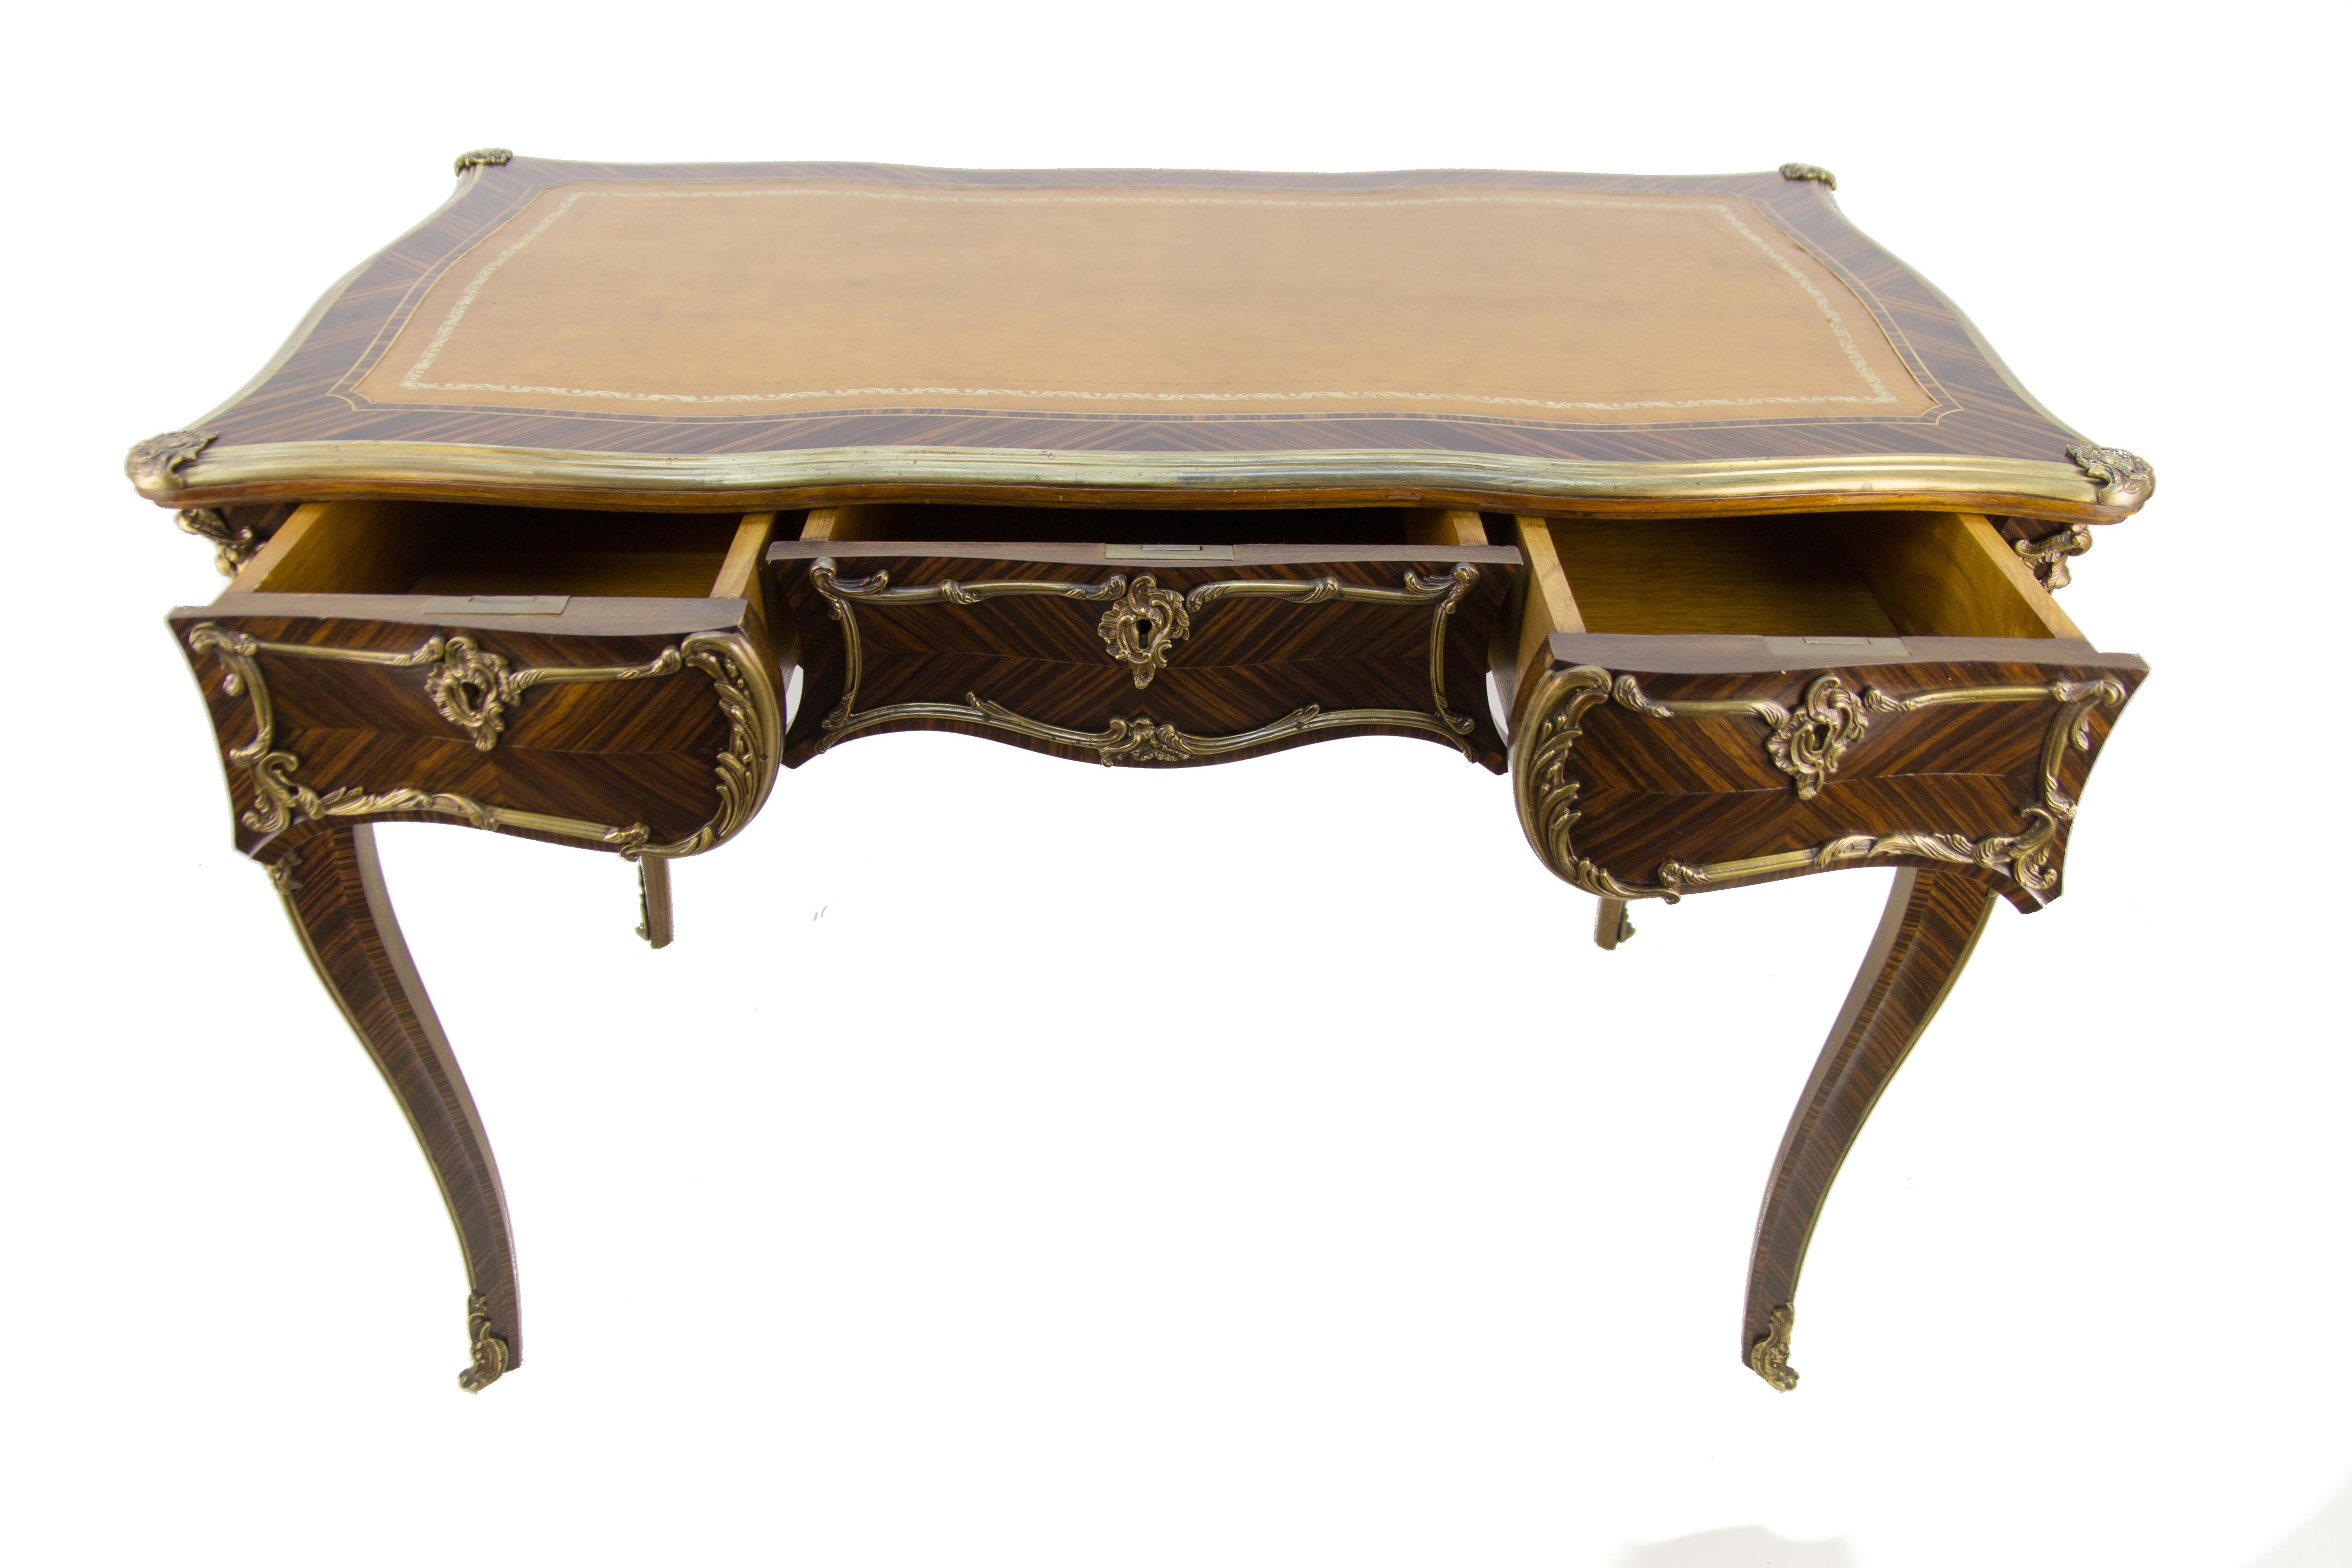 Ce beau bureau de style Louis XV présente un plateau en cuir encadré de bordures en bronze. L'écritoire repose sur des pieds cabriole surmontés de montures moulées à motifs floraux et feuillagés, avec un placage en noyer finement fini sur toutes les